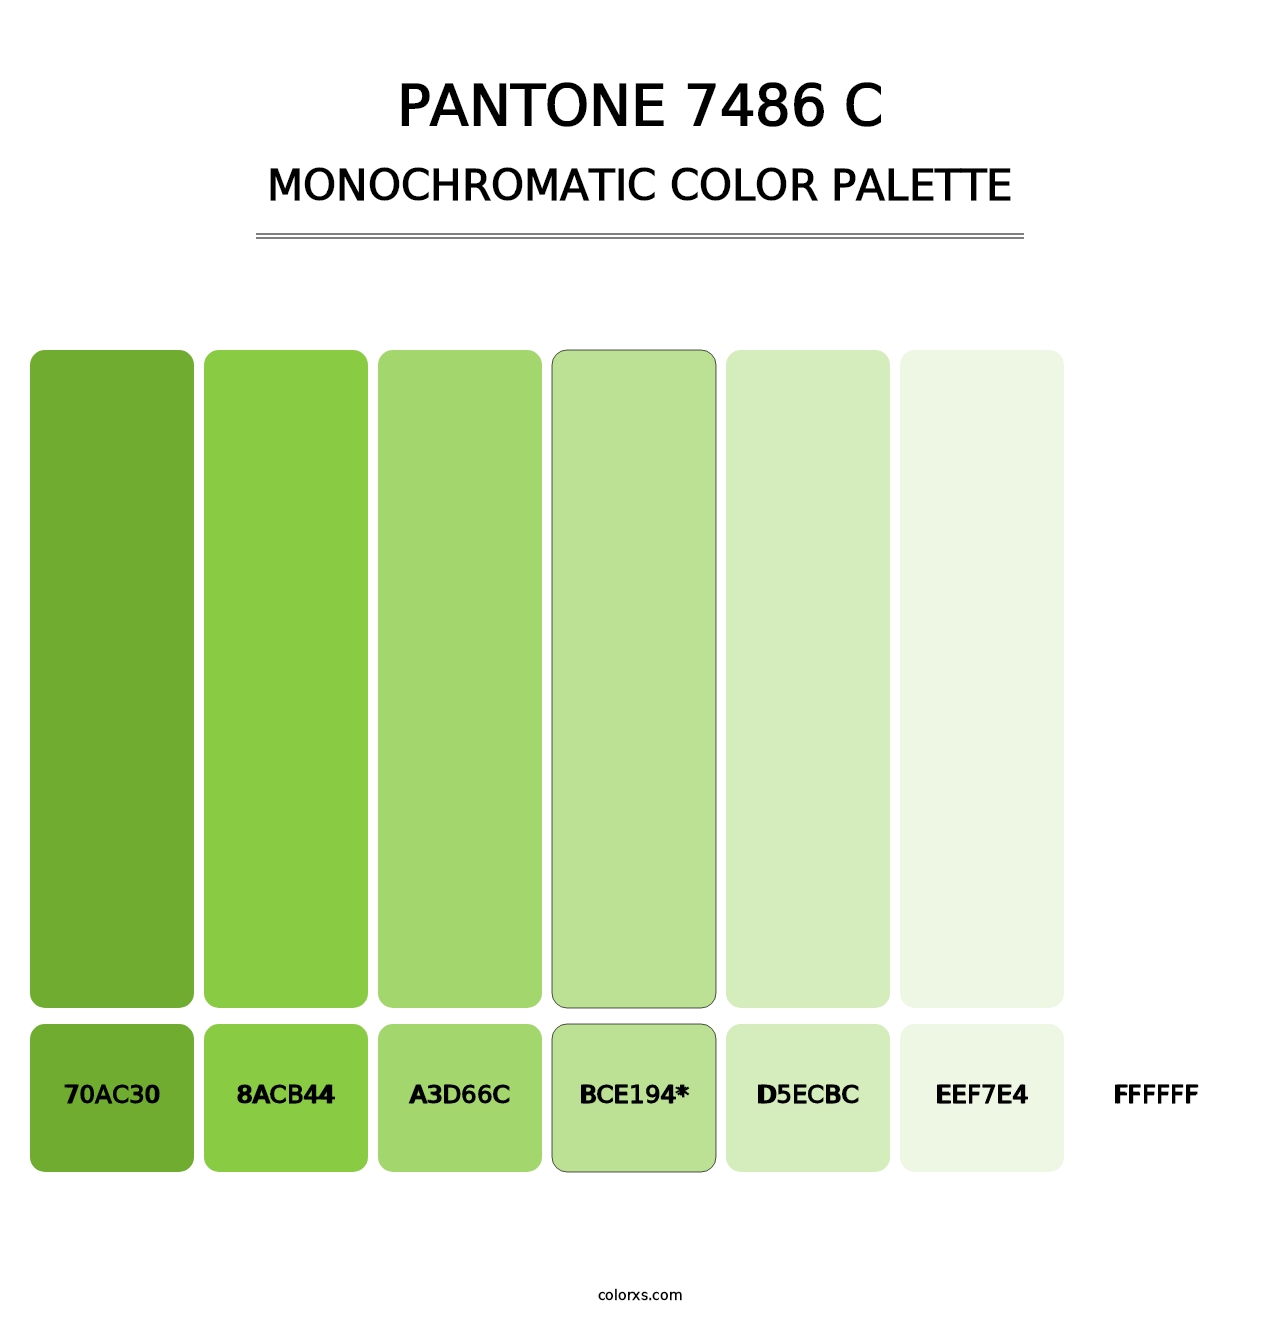 PANTONE 7486 C - Monochromatic Color Palette